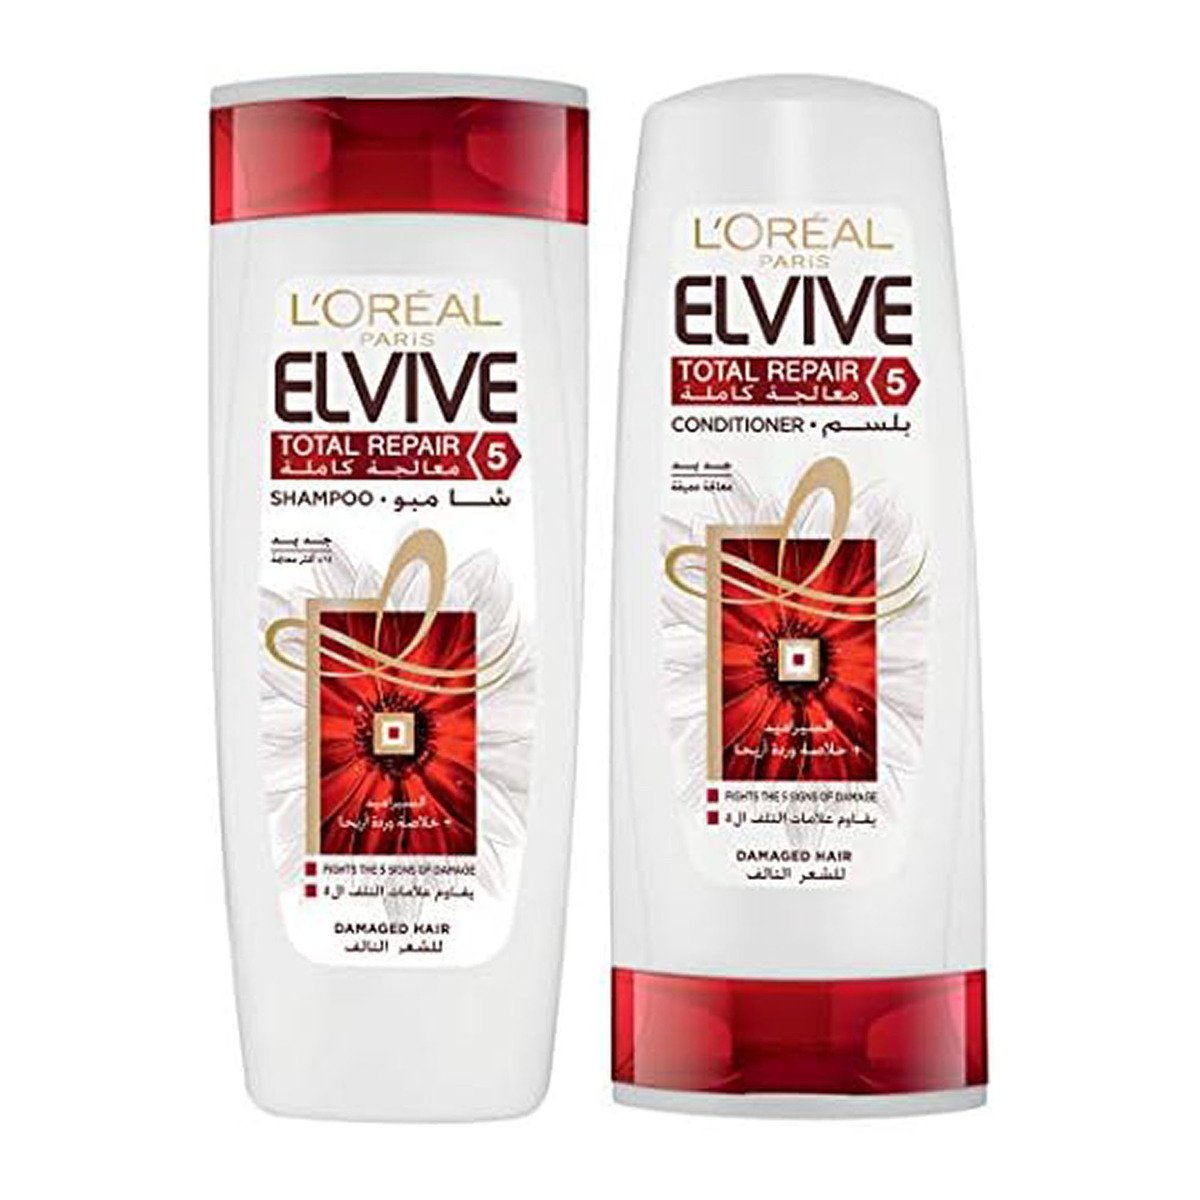 L'Oreal Paris Elvive Total Repair 5 Shampoo 400 ml + Conditioner 360 ml